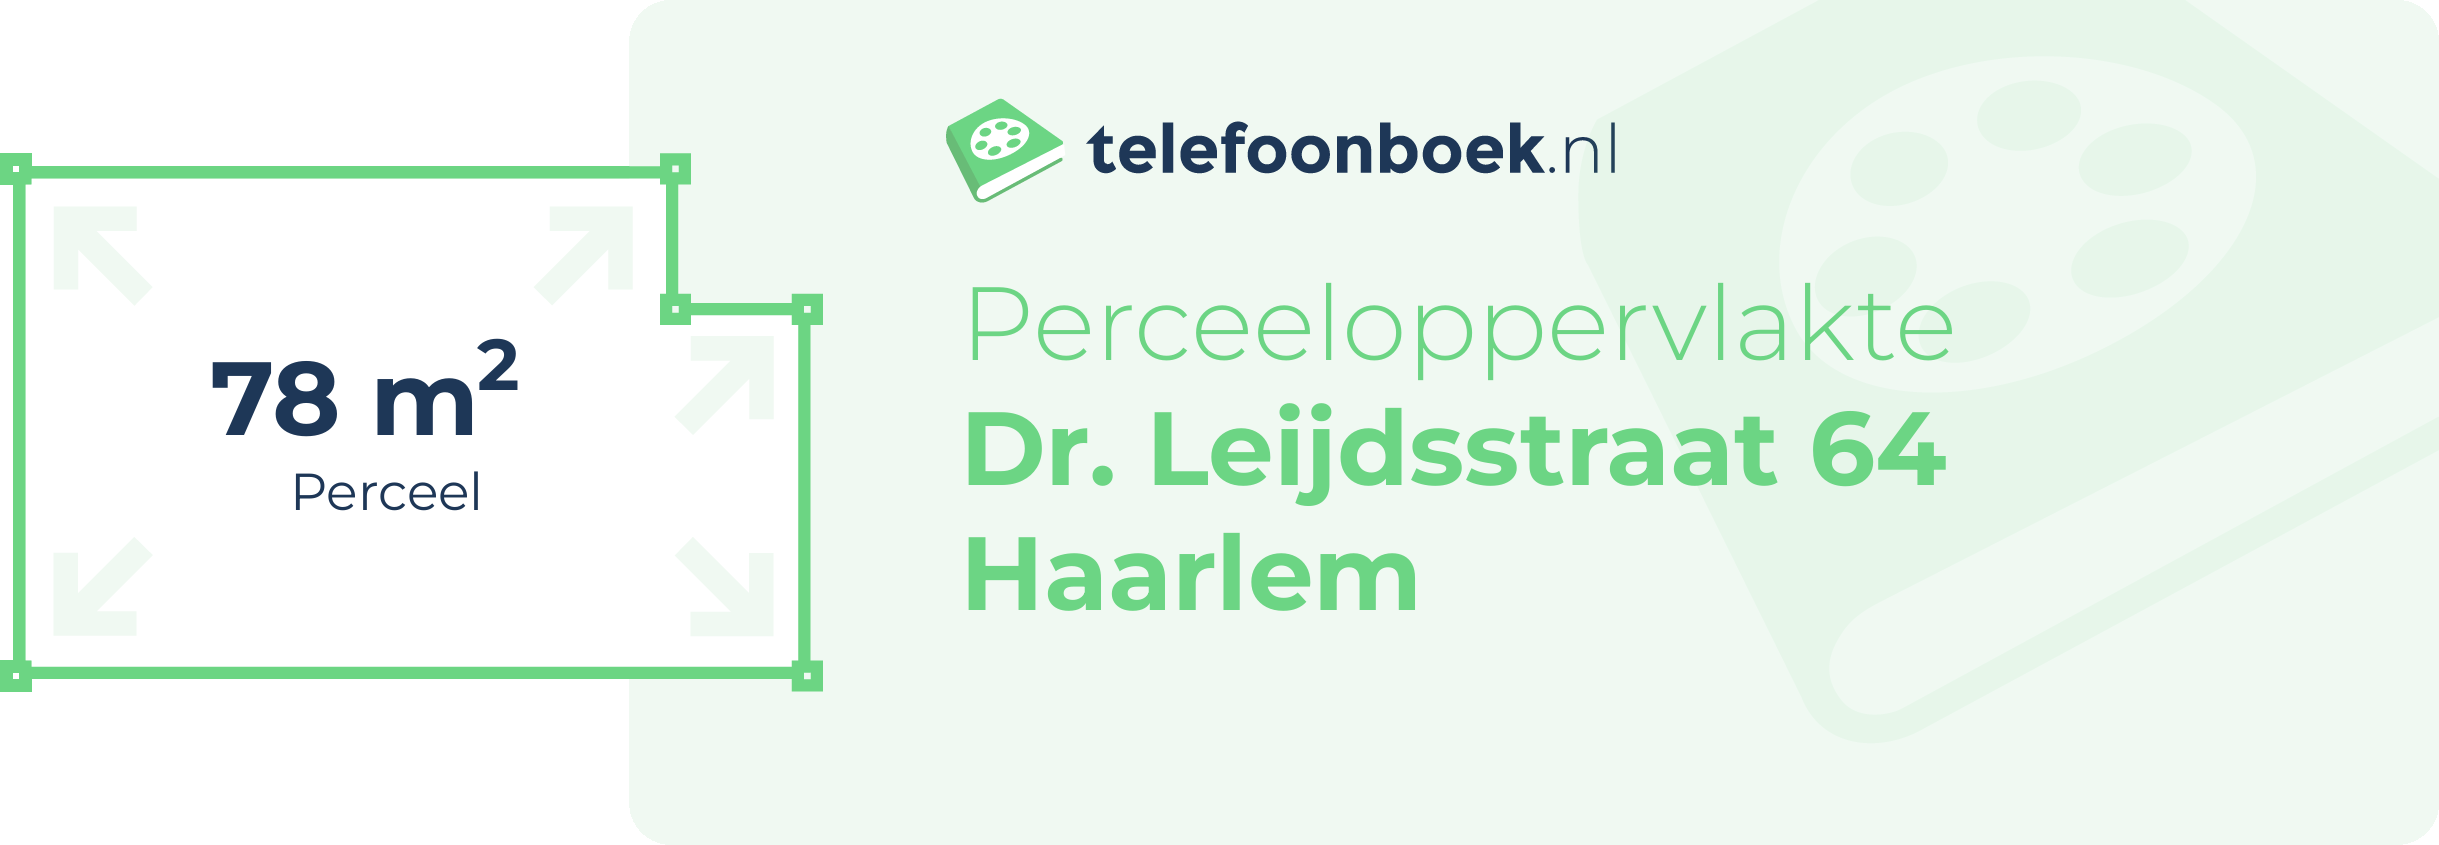 Perceeloppervlakte Dr. Leijdsstraat 64 Haarlem